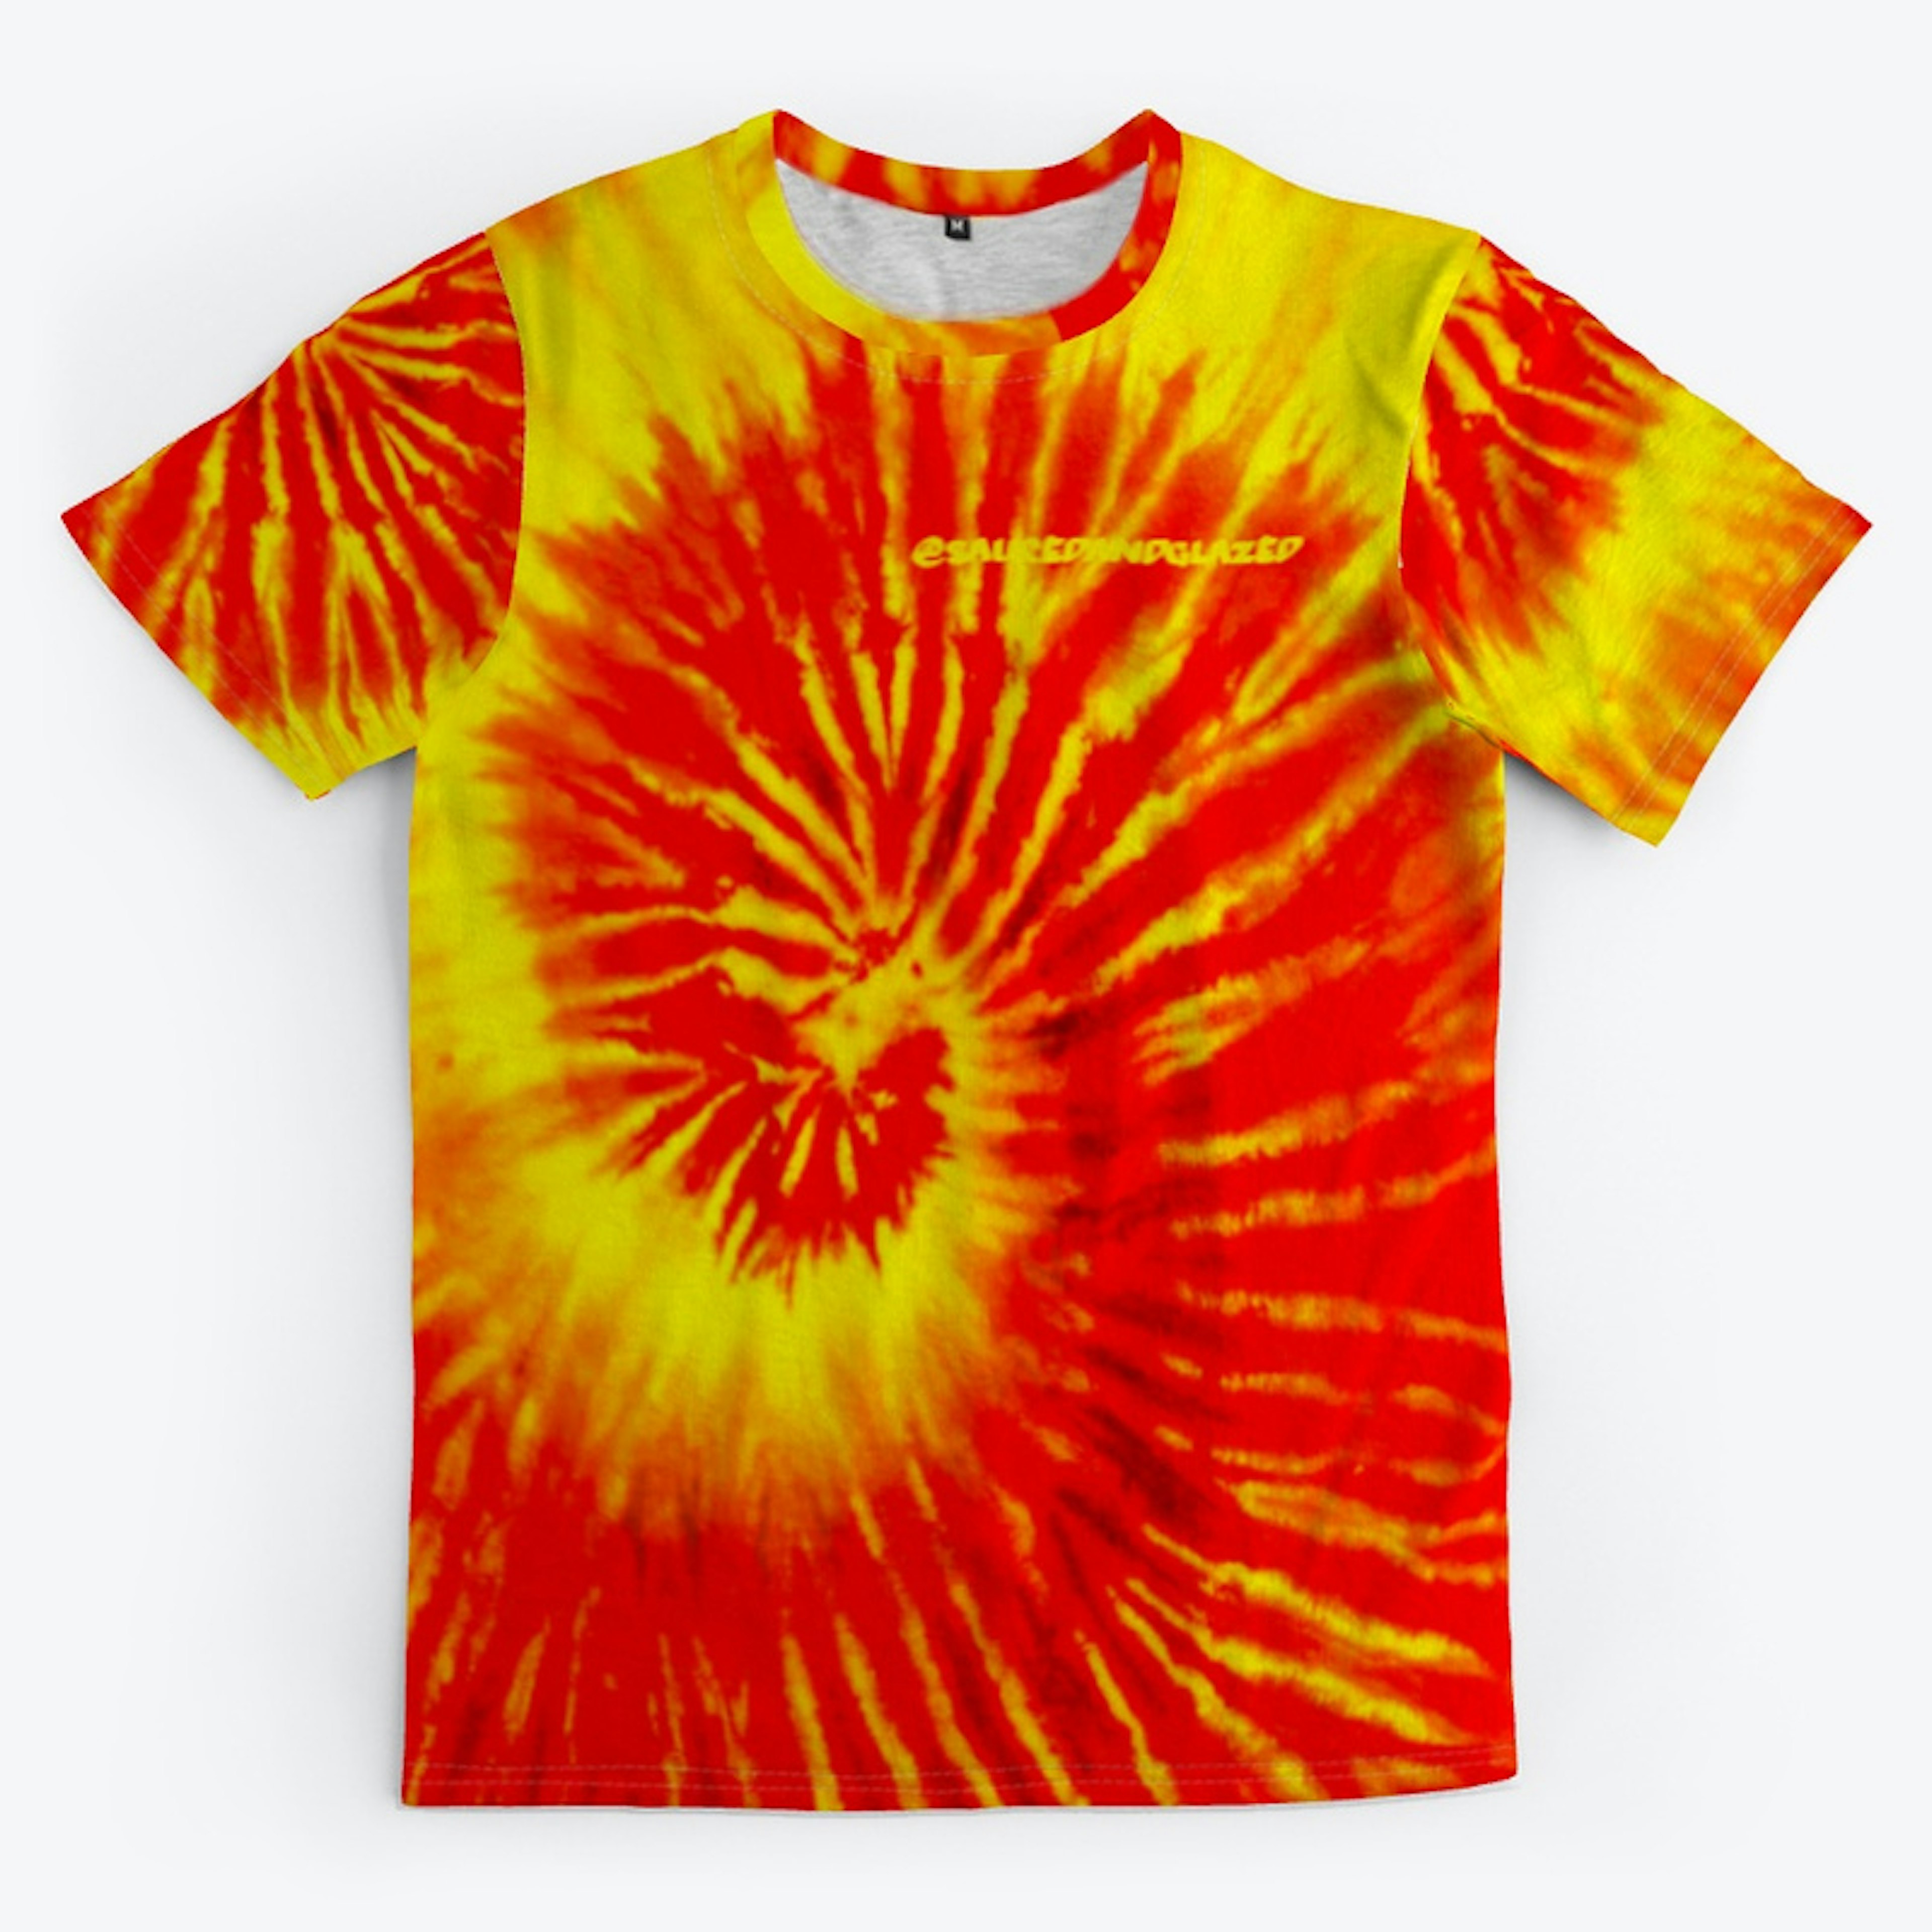 Full Orange Swirl T-Shirt